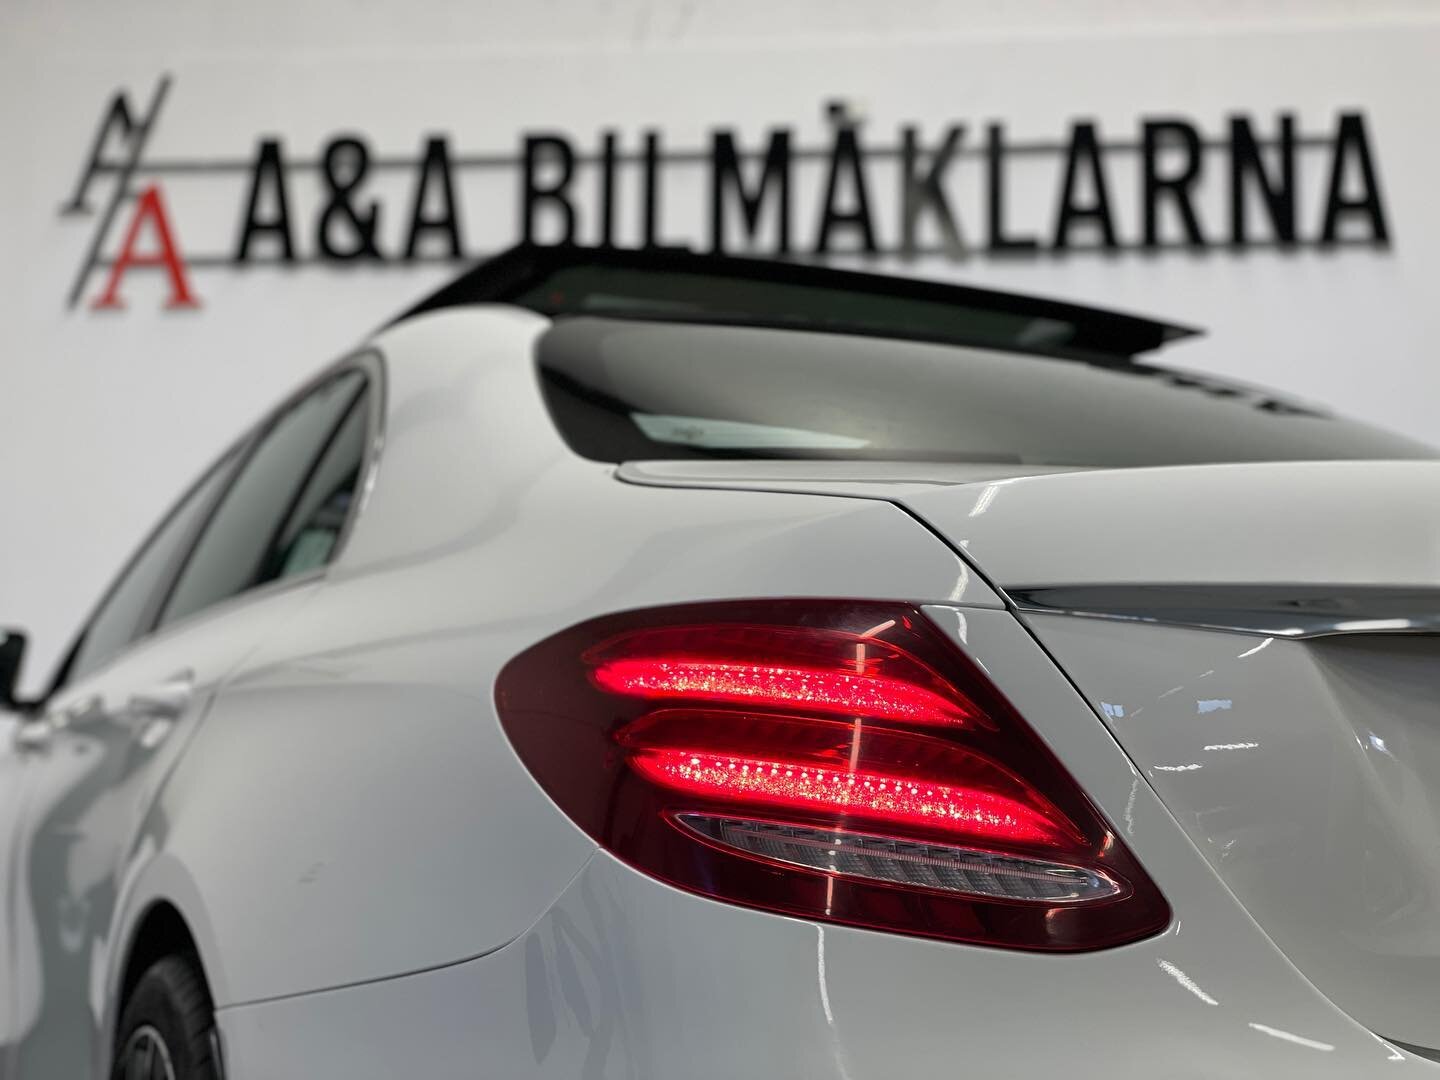 Nyinkommen Mercedes-Benz E220 AMG Sport fr&aring;n 2017 med all utrustning man vill ha! 

📞 031-7070800
✉️ info@aabilmaklarna.com